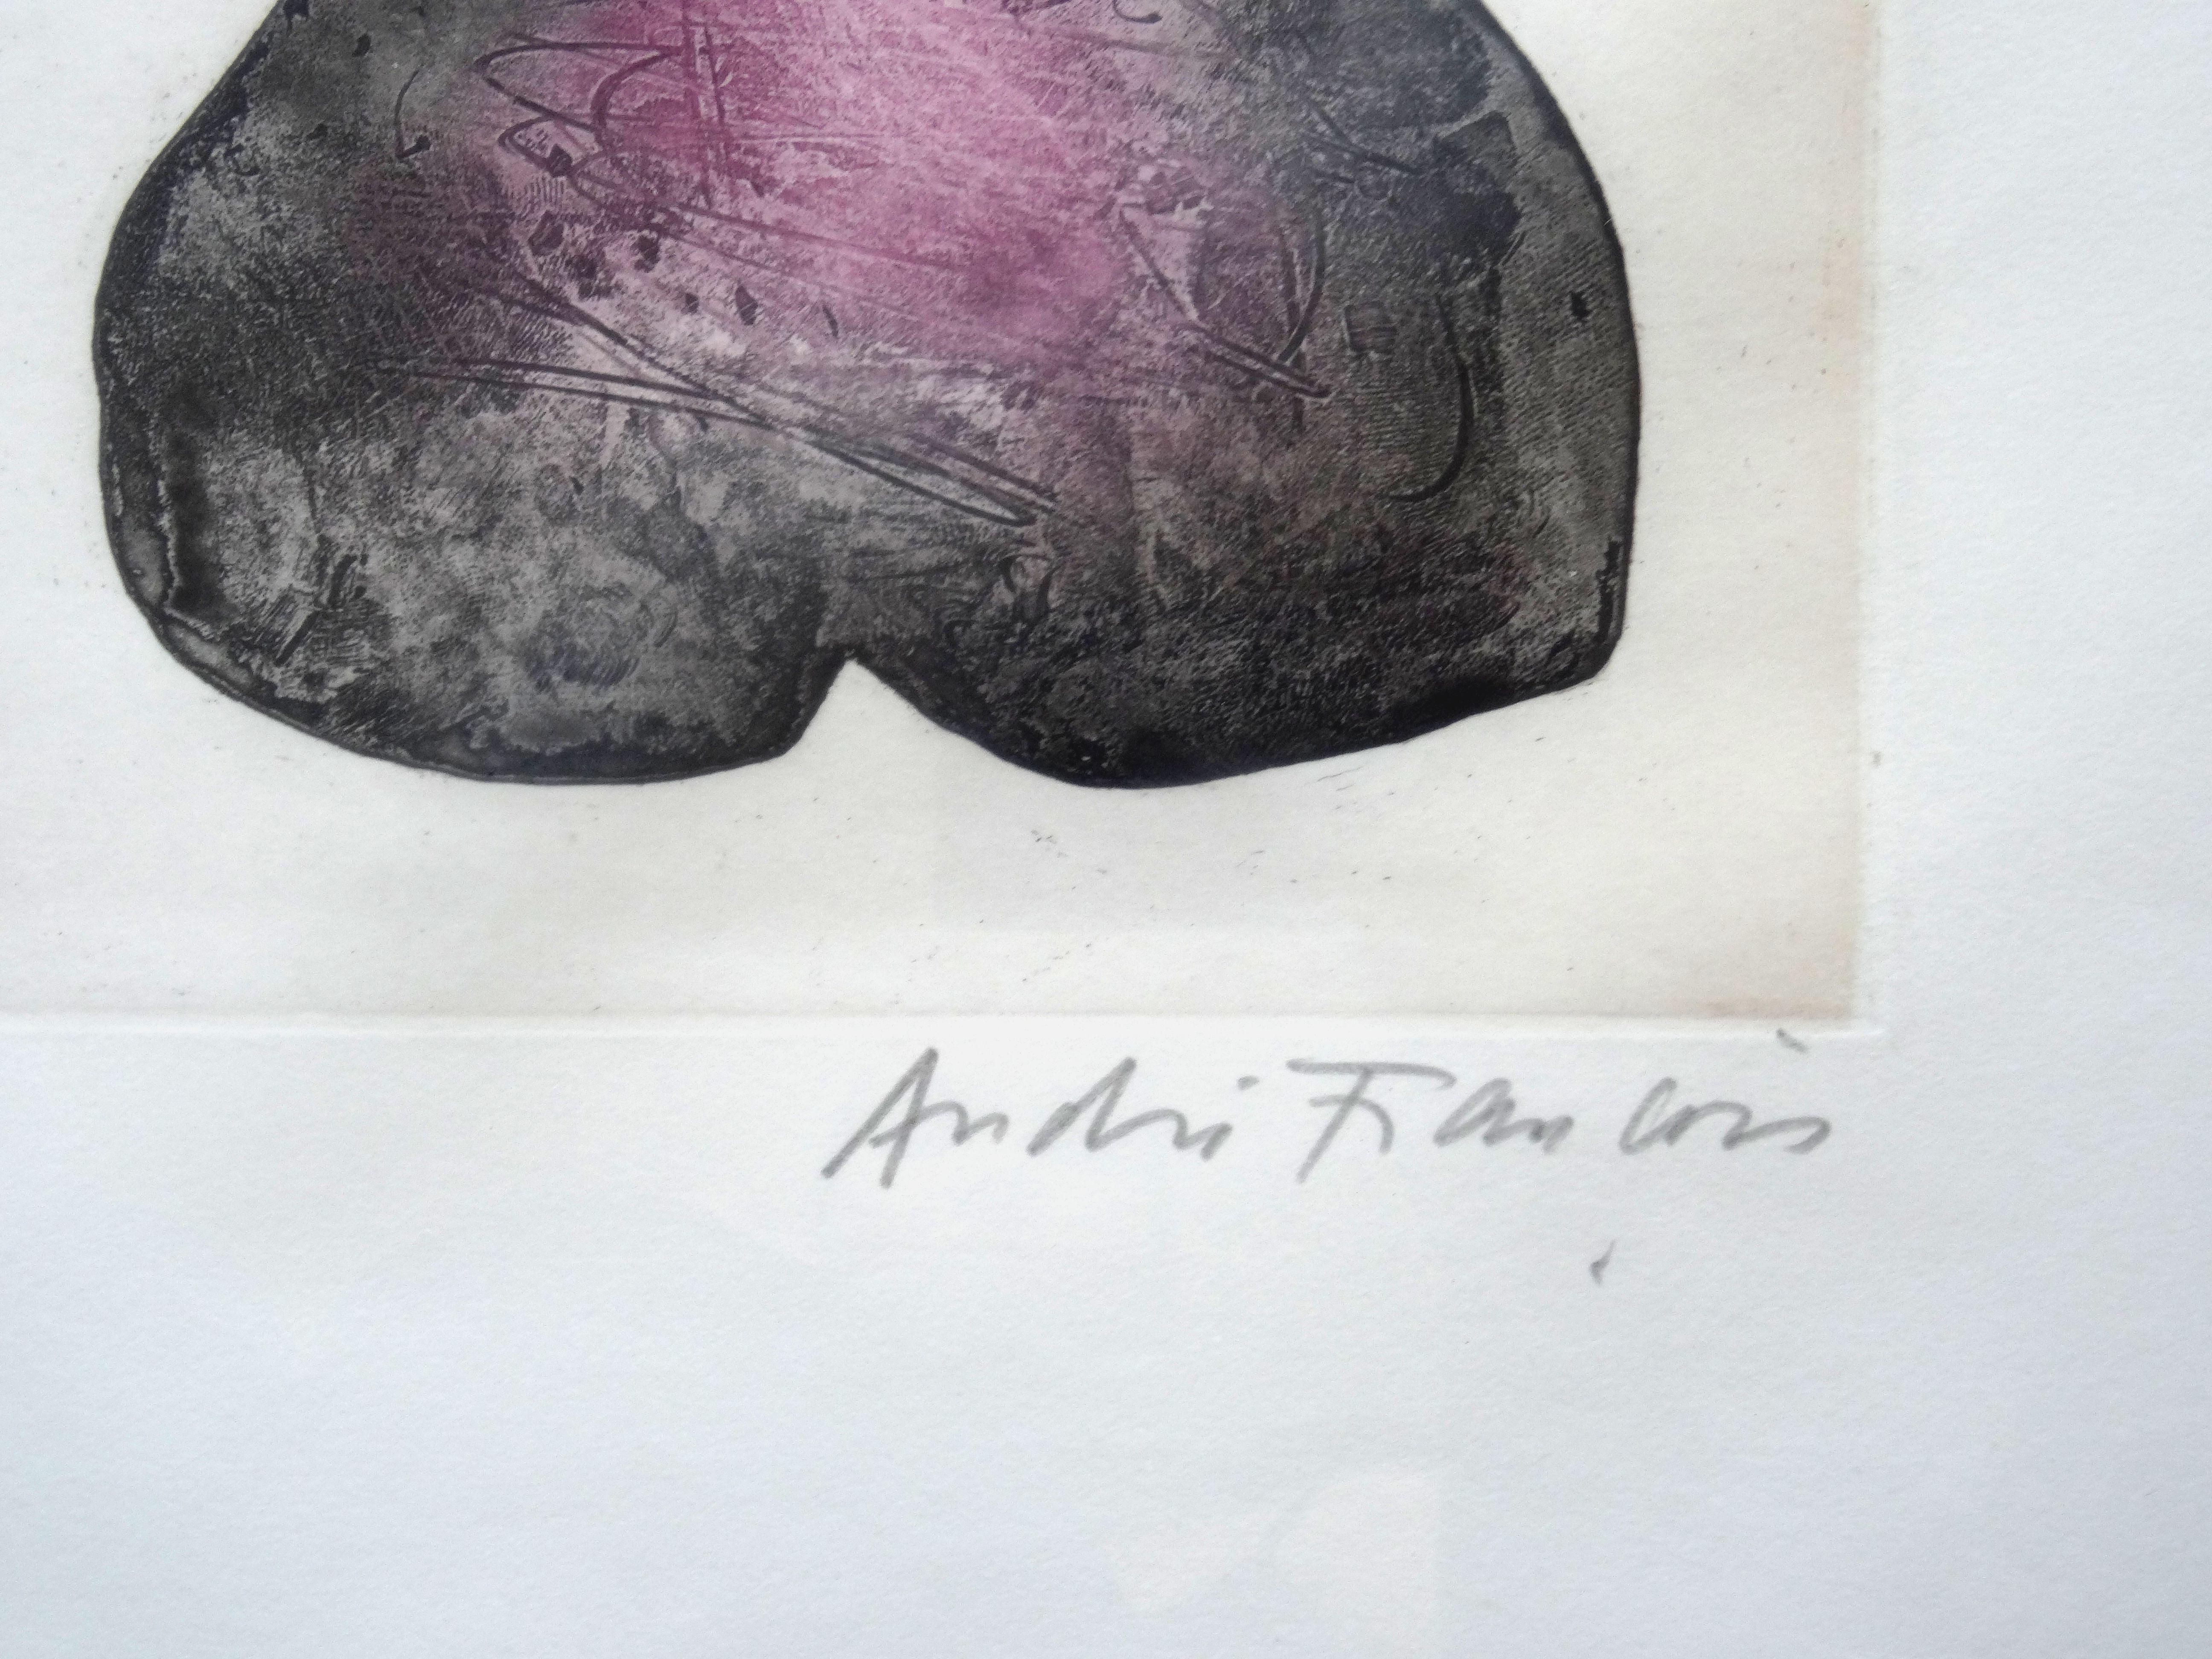 Trois femmes. 9/50, papier, gravure, 23x58 cm - Print de André François